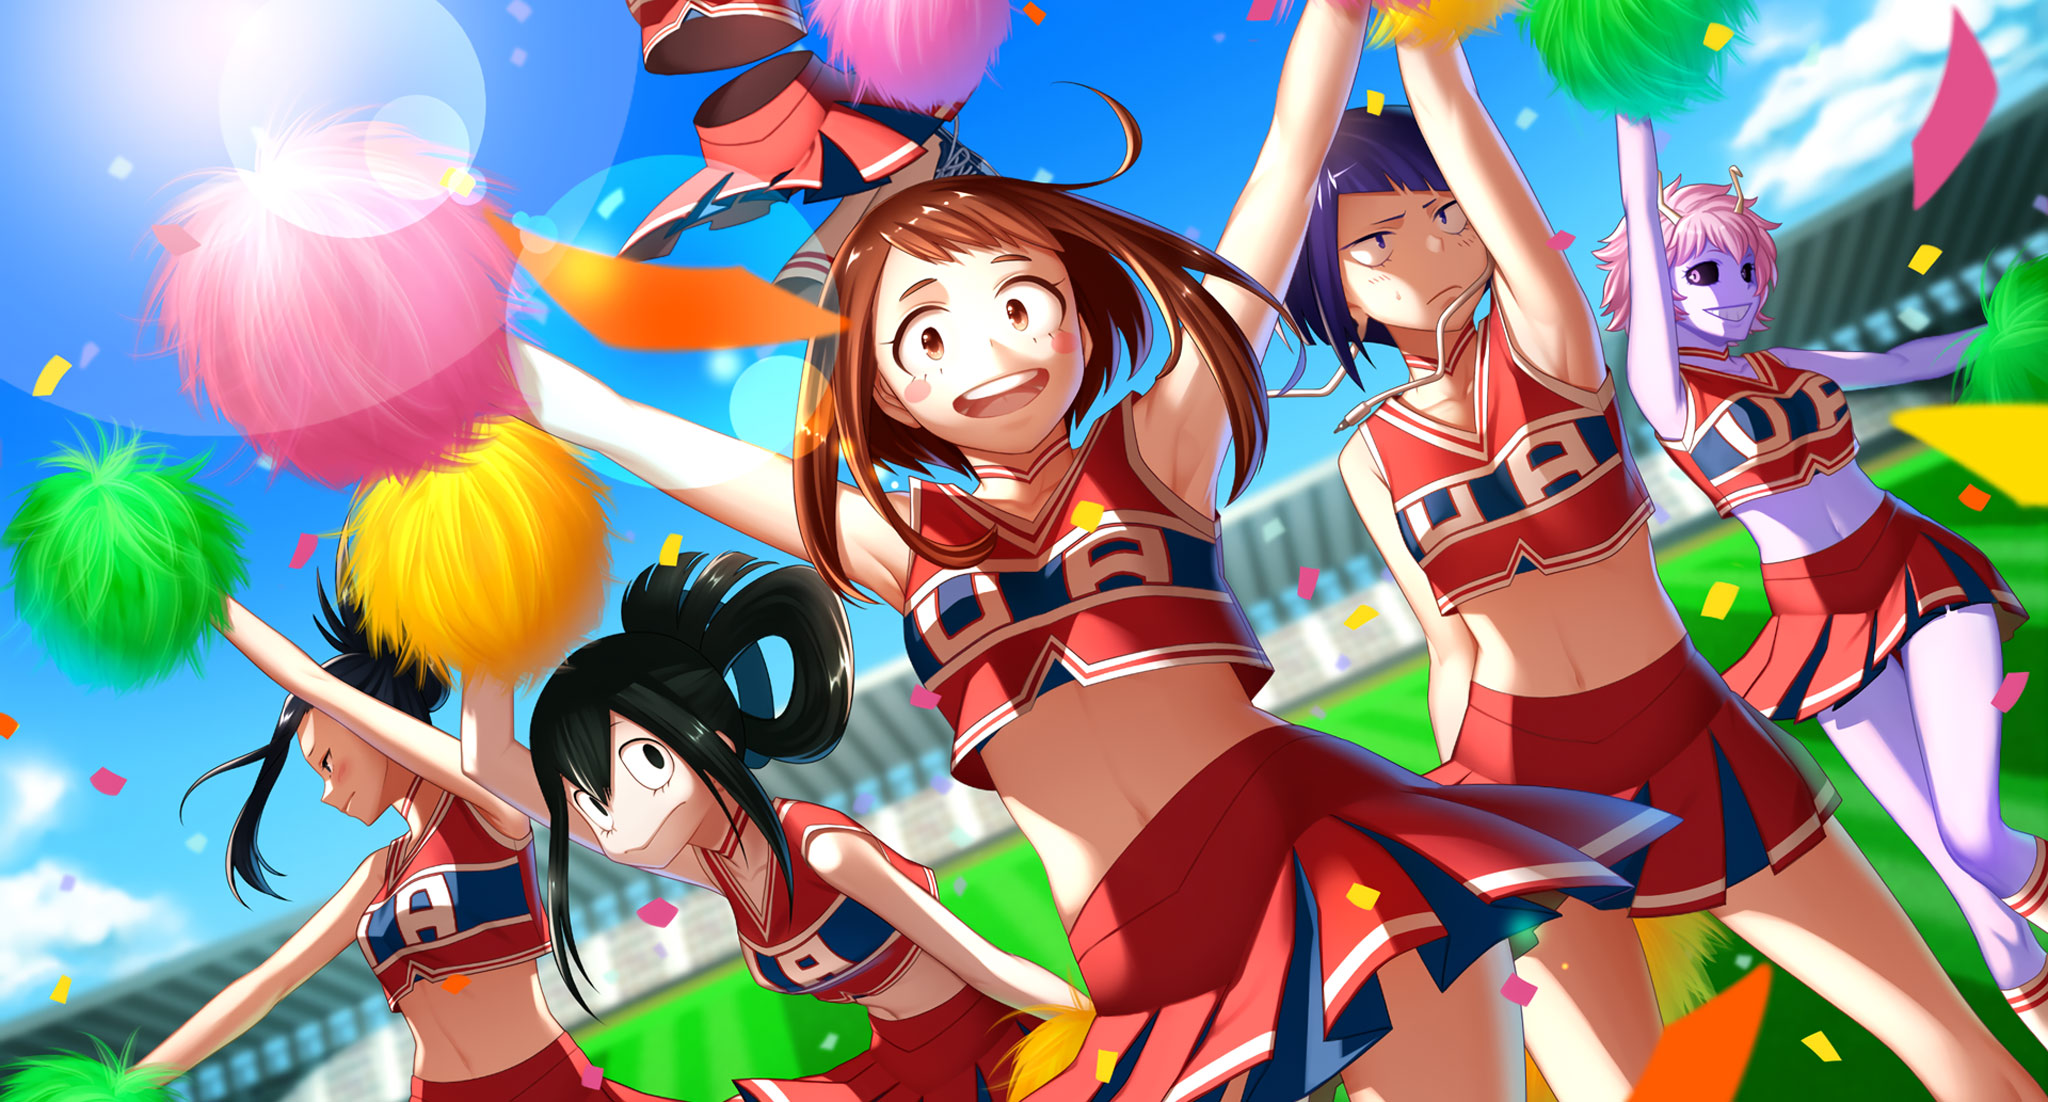 Anime 2048x1102 anime girls Boku no Hero Academia anime pompon arms up colorful miniskirt